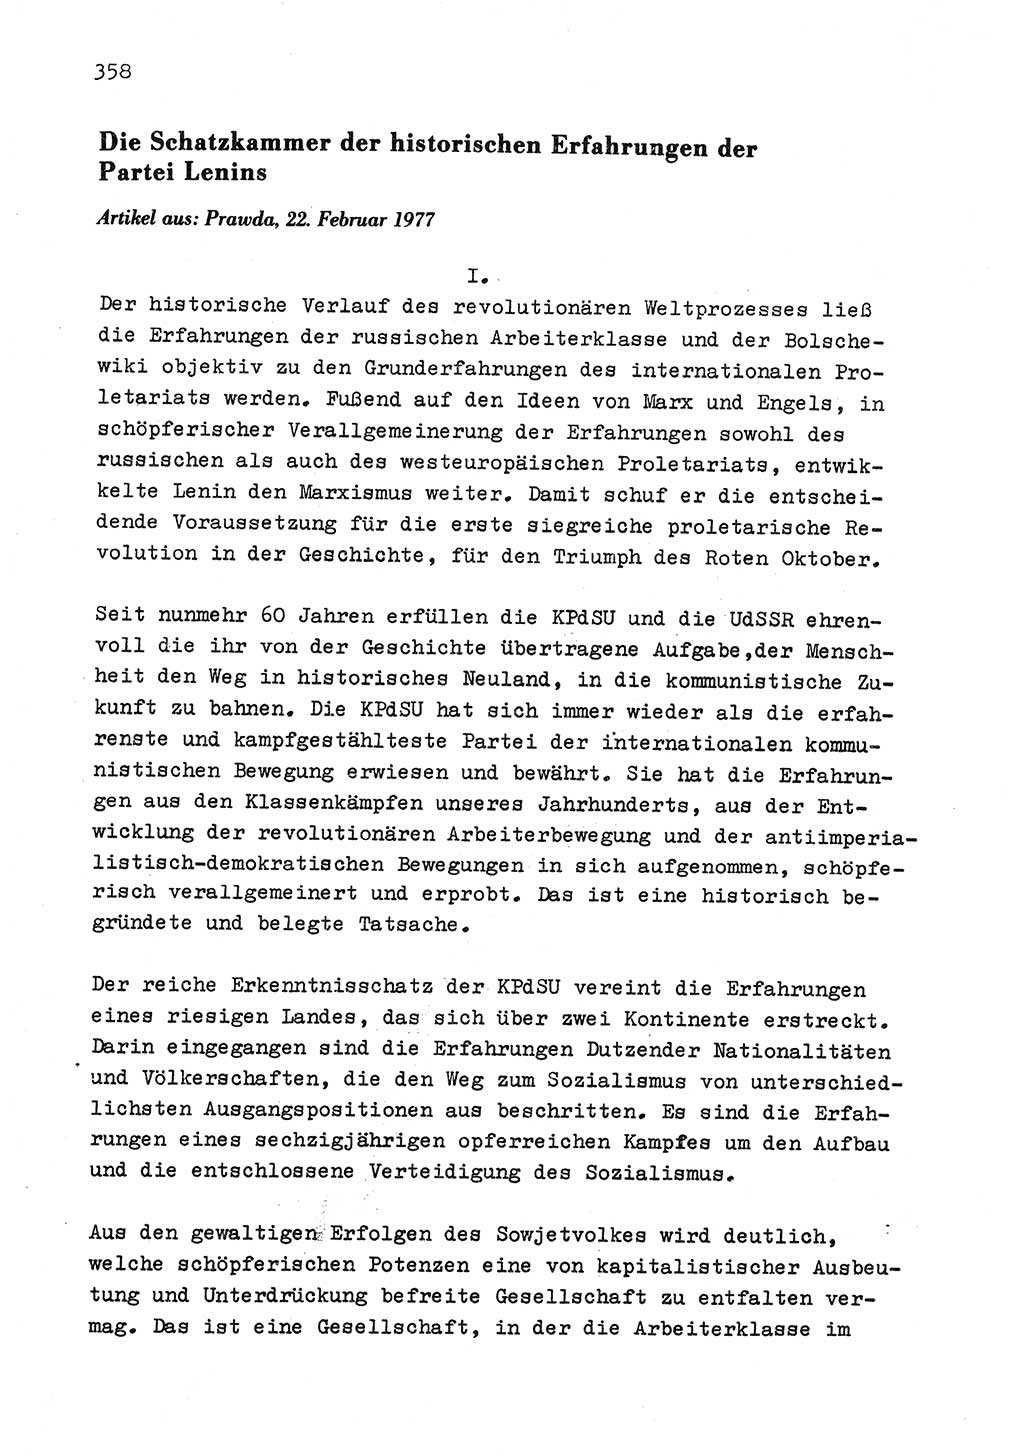 Zu Fragen der Parteiarbeit [Sozialistische Einheitspartei Deutschlands (SED) Deutsche Demokratische Republik (DDR)] 1979, Seite 358 (Fr. PA SED DDR 1979, S. 358)